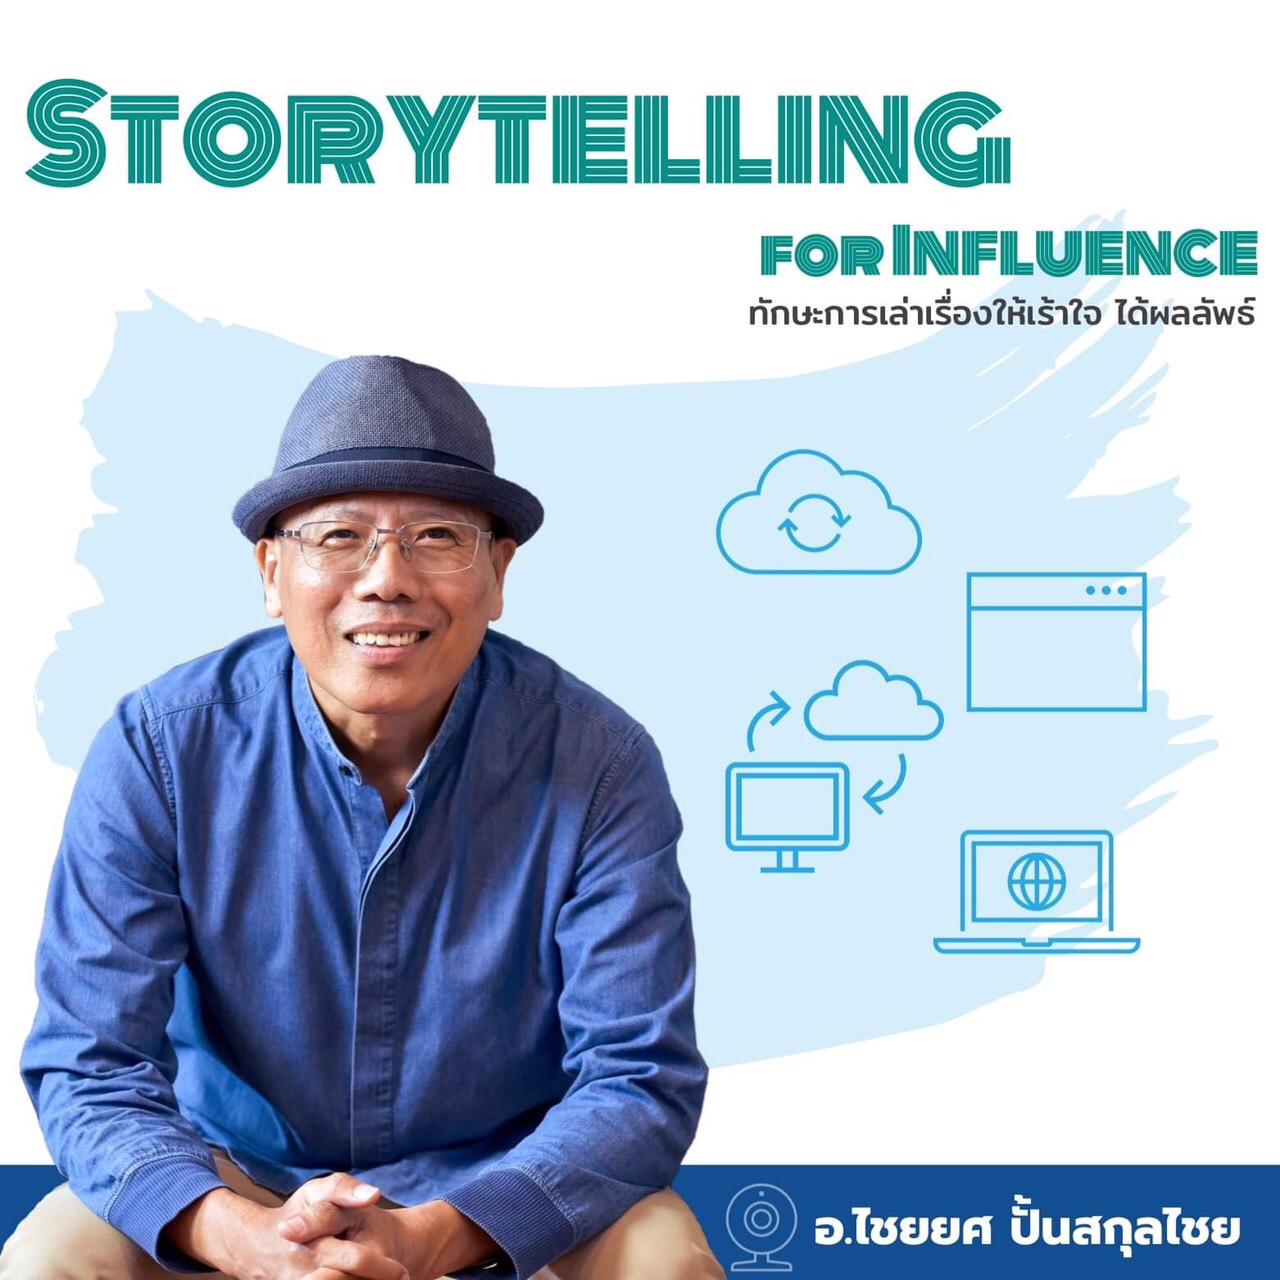 หลักสูตรอบรม Storytelling for Influence สอนโดย อ.ไชยยศ ปั้นสกุลไชย